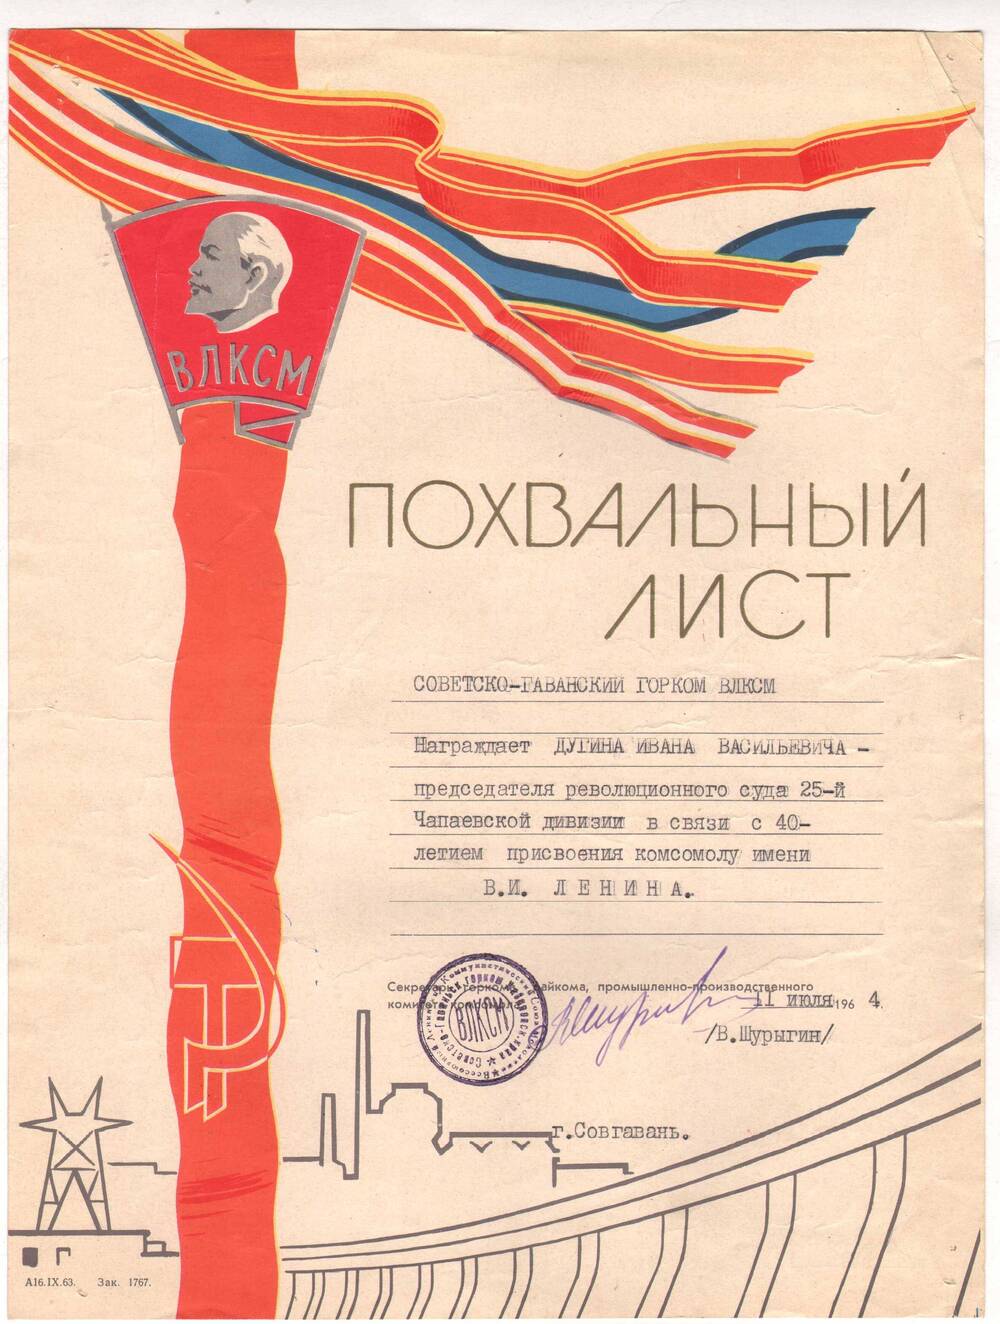 Похвальный лист Дугину И.В. от Советско-Гаванского горкома ВЛКСМ